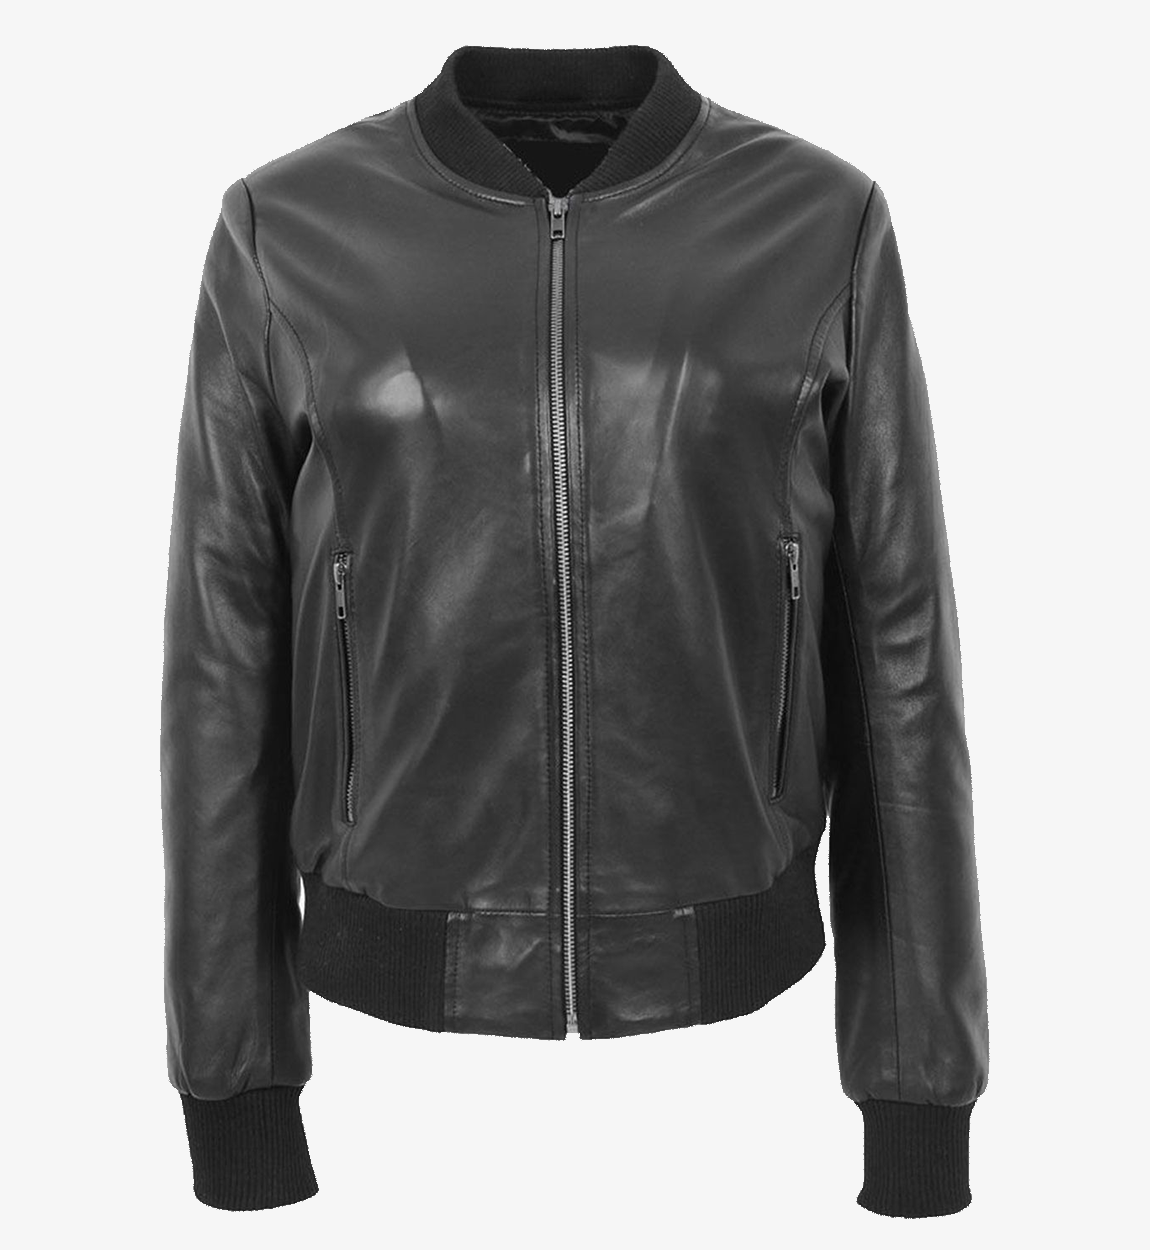 Women's Stylish Black Bomber Leather Jacket